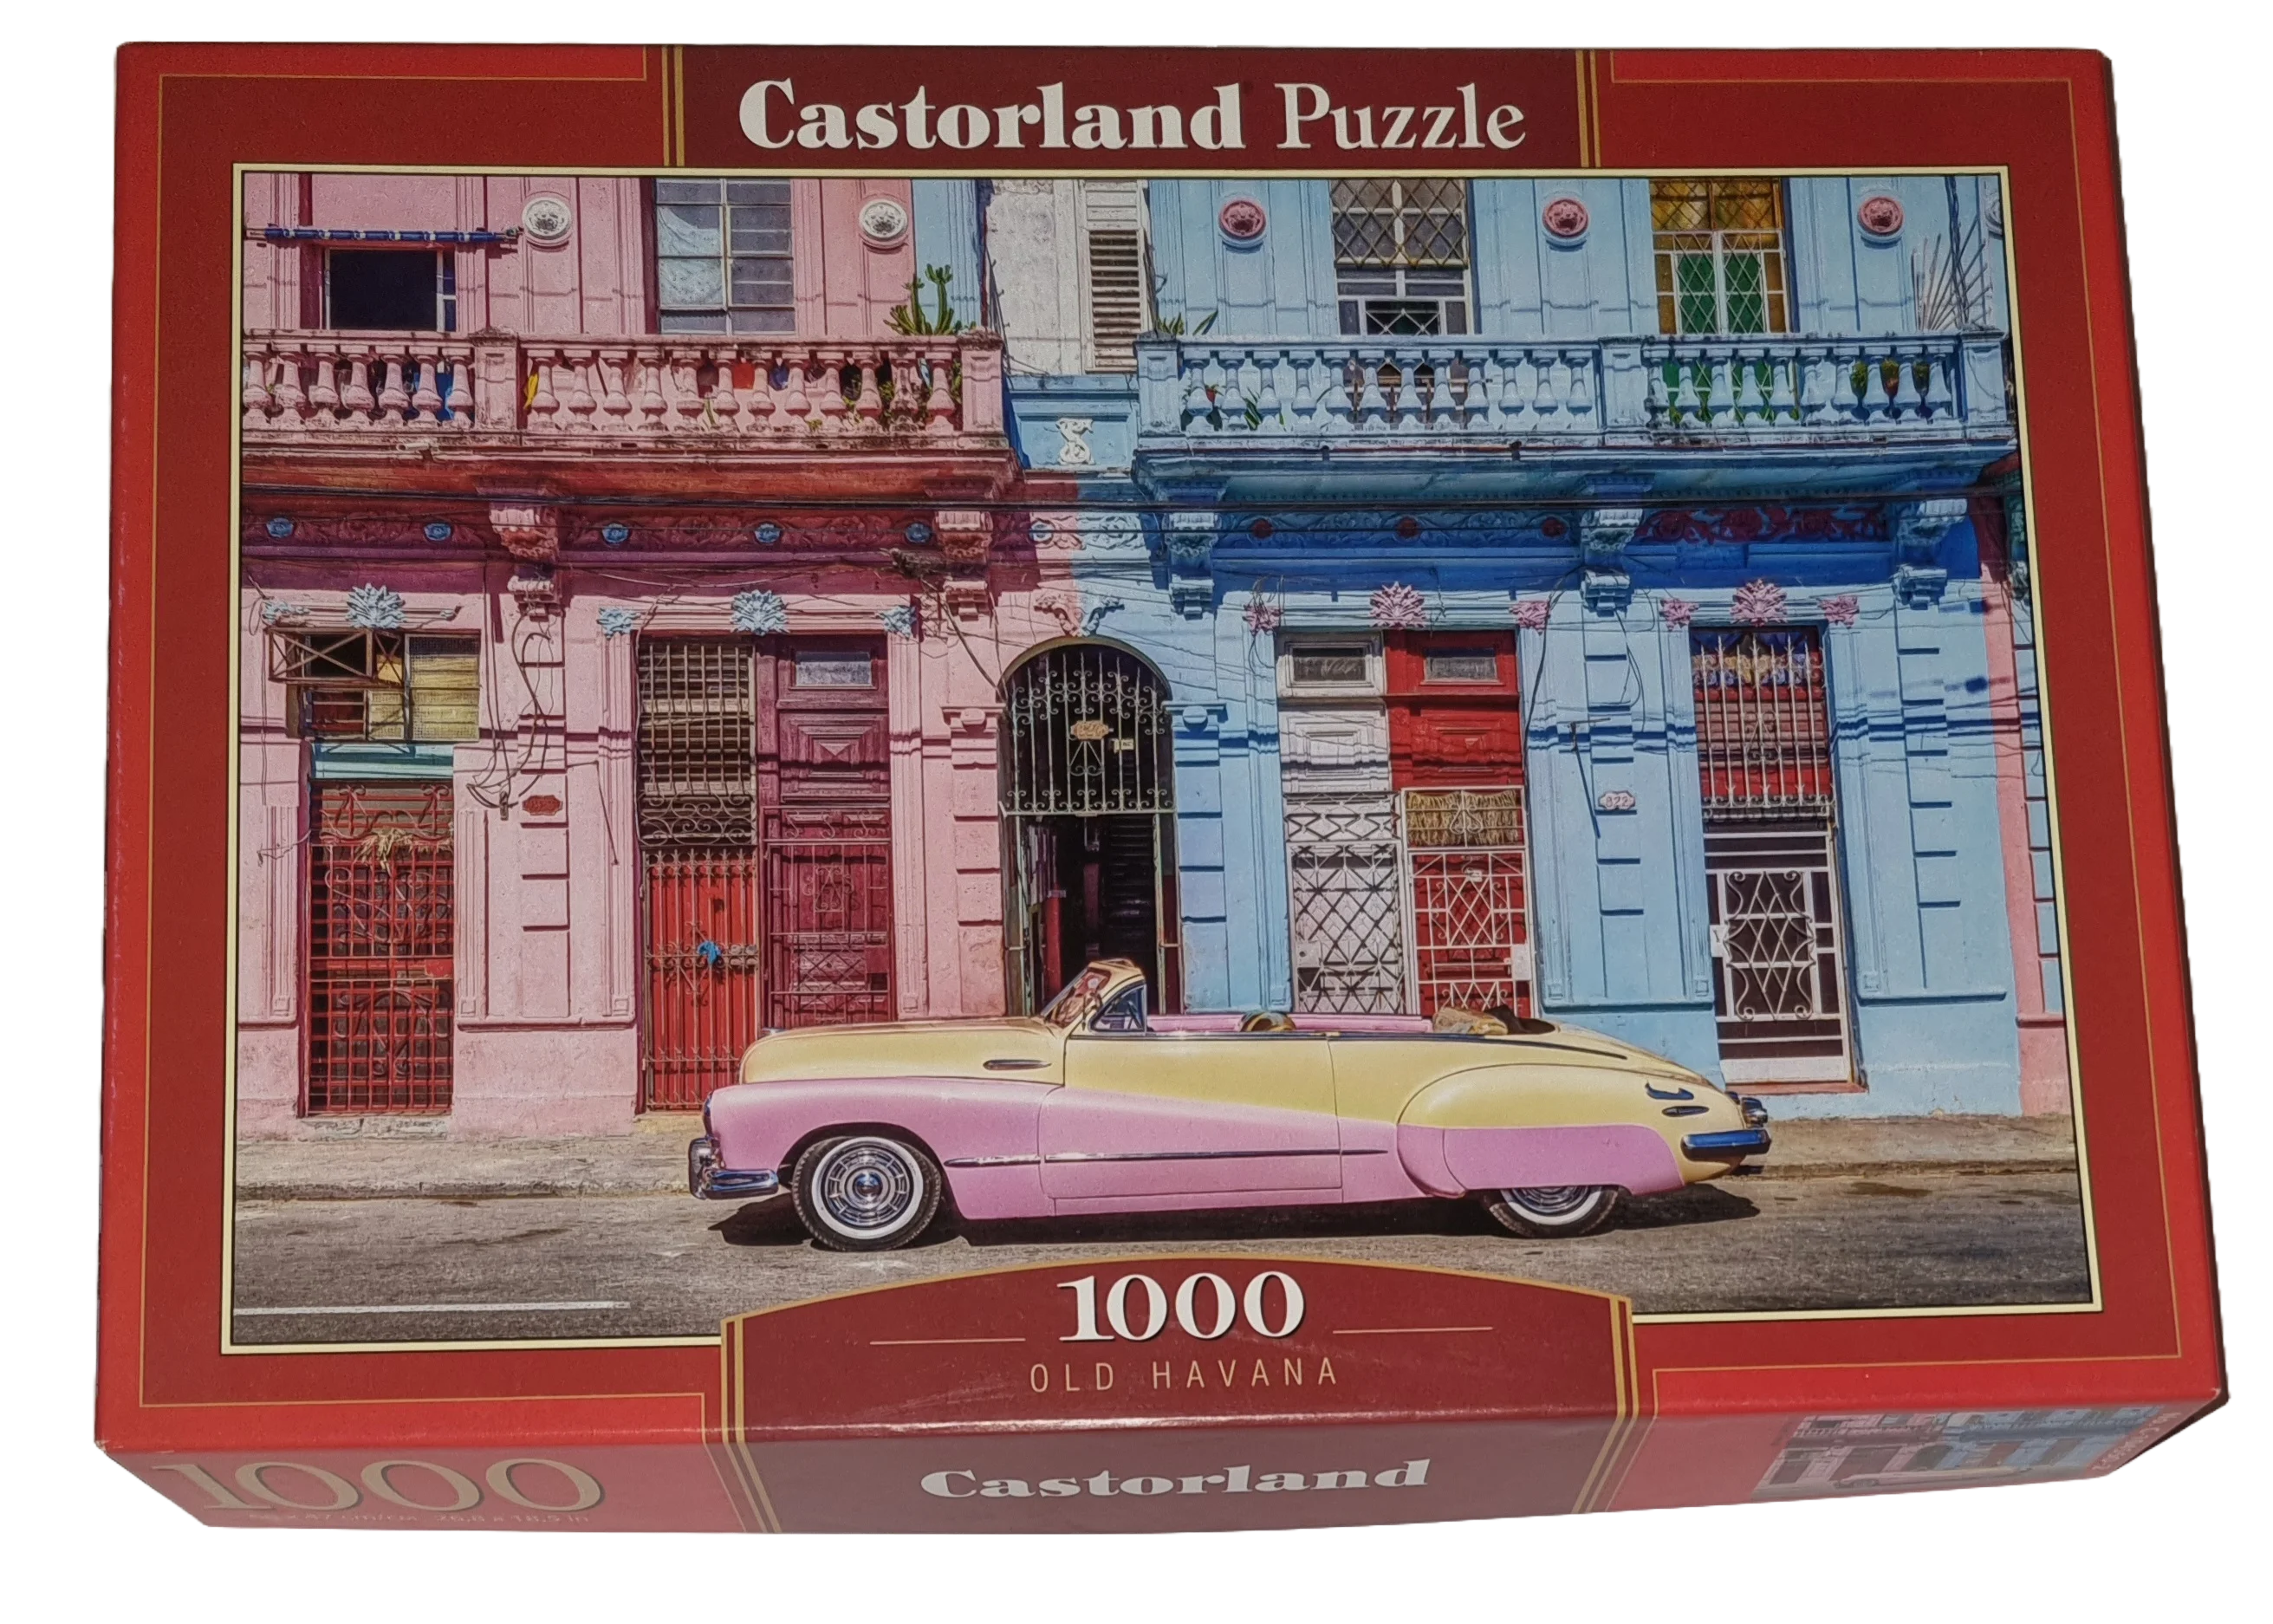 Castorland Puzzle 1000 Teile Castor No. C-104550-2